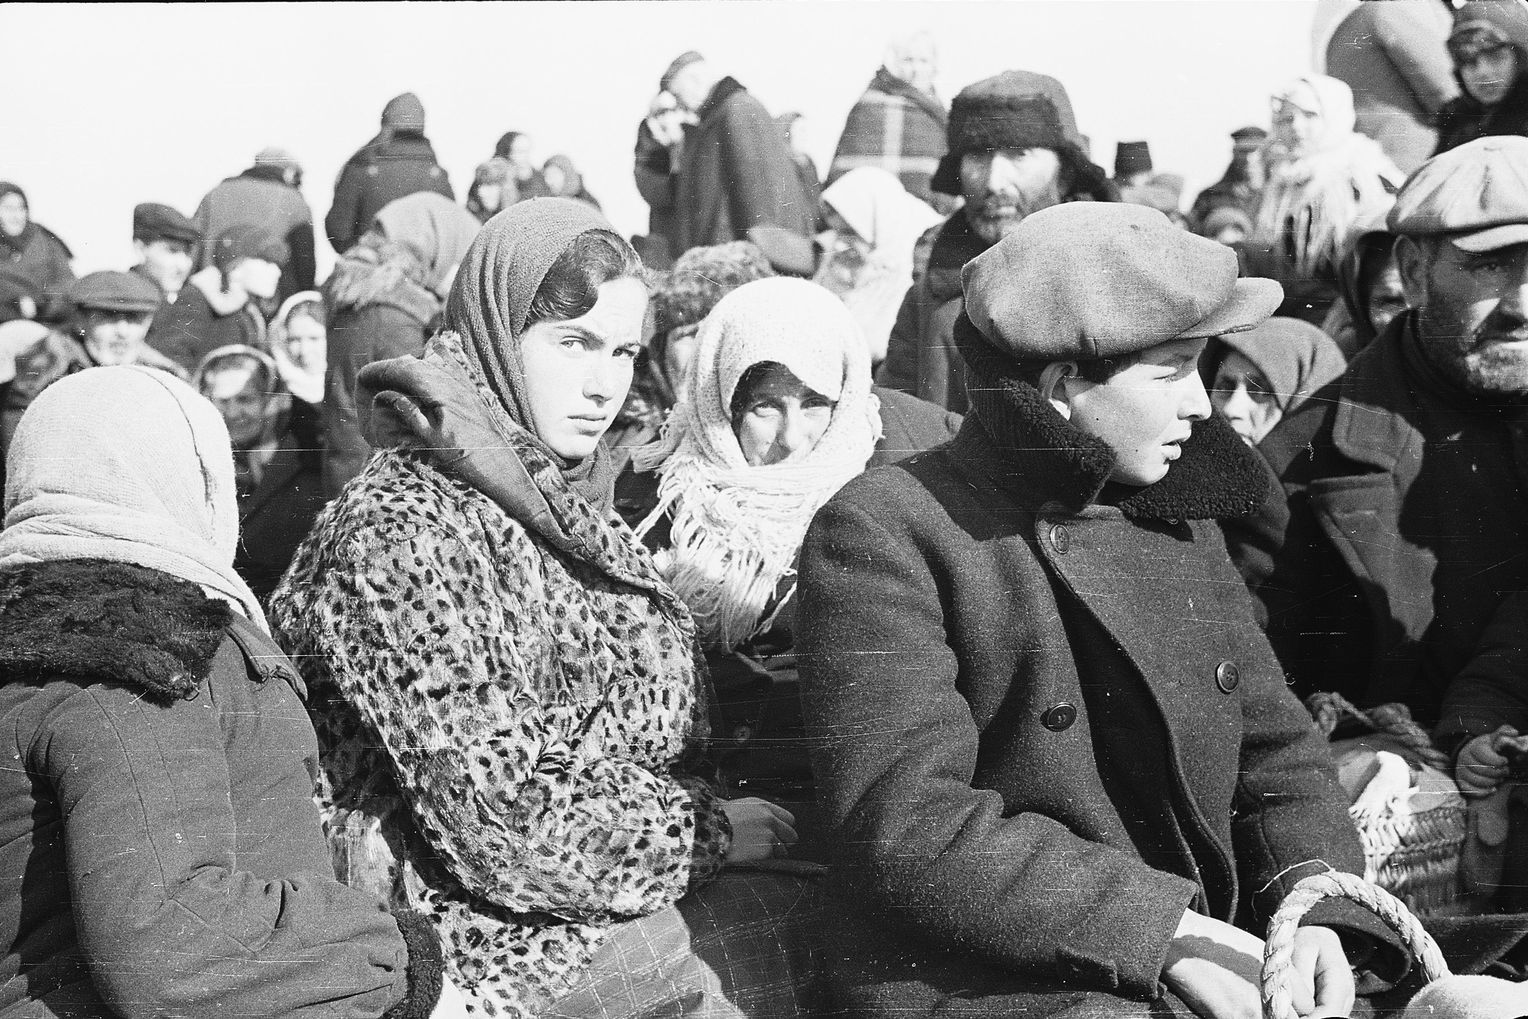 Questa giovane donna sarà uccisa poco dopo dagli uomini del Sonderkommando 4a. presso Lubny nei pressi di Kiev. La fotografia è stata scattata dal fotografo Johannes Hähle, membro di una compagnia di propaganda tedesca. Hähle non poté essere interrogato sui massacri in Russia perché morì in Francia nel 1944.